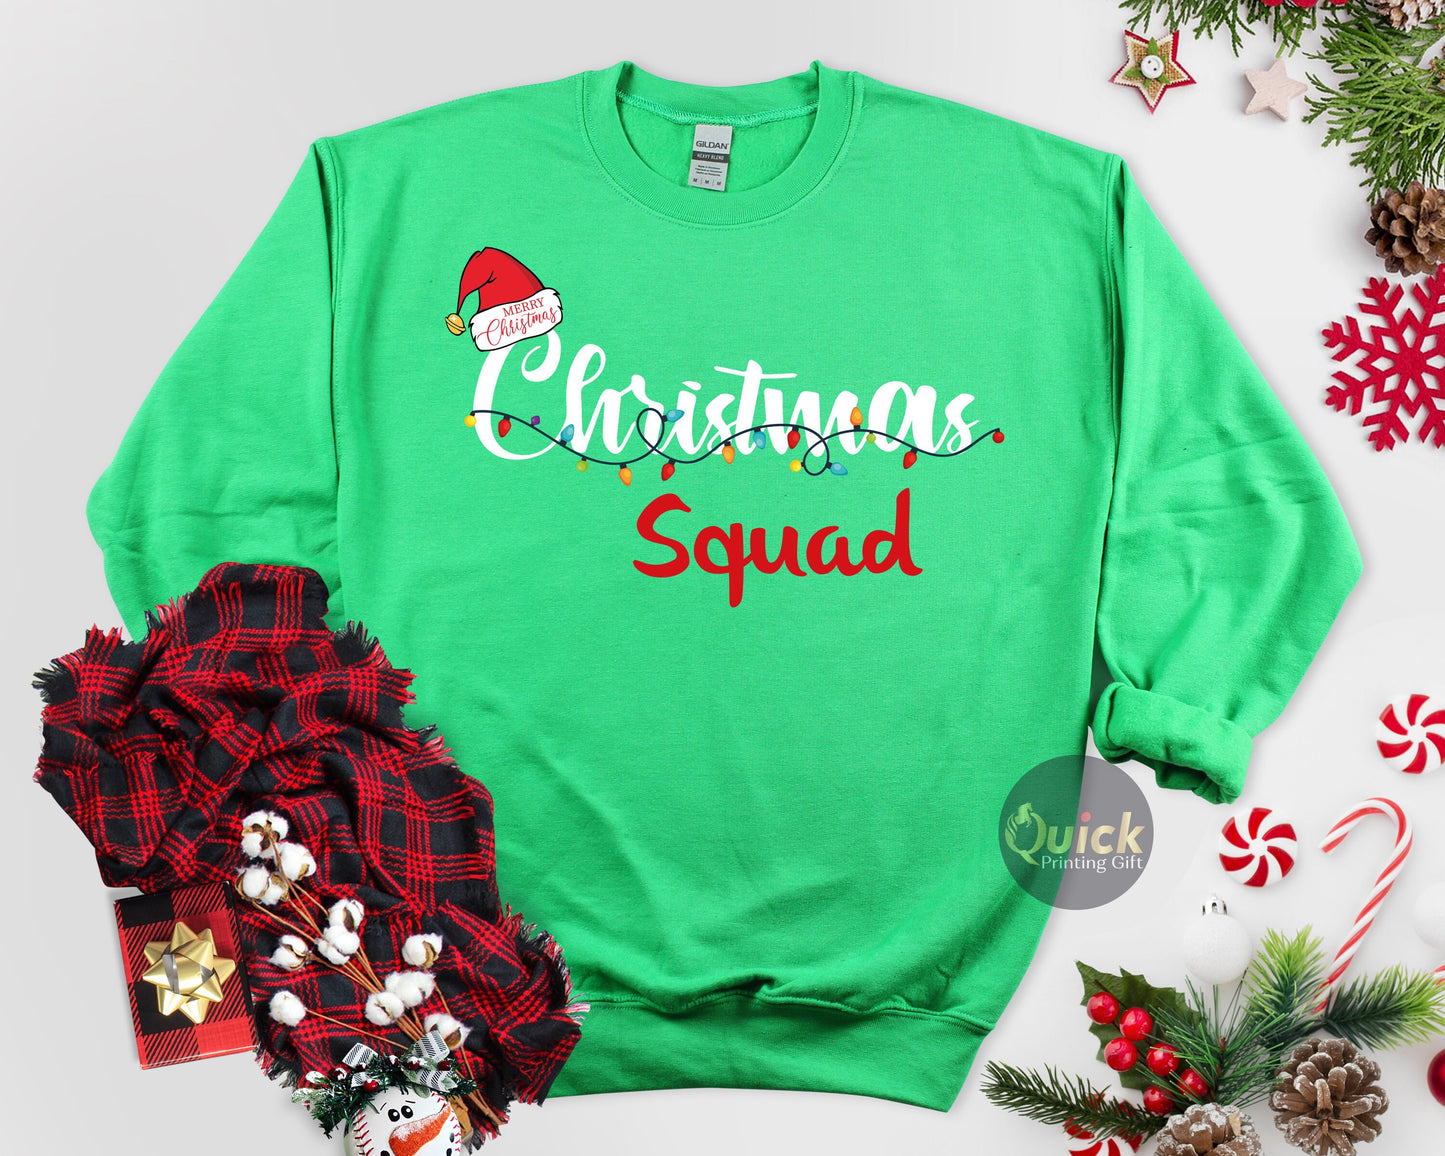 Christmas Squad Sweatshirt